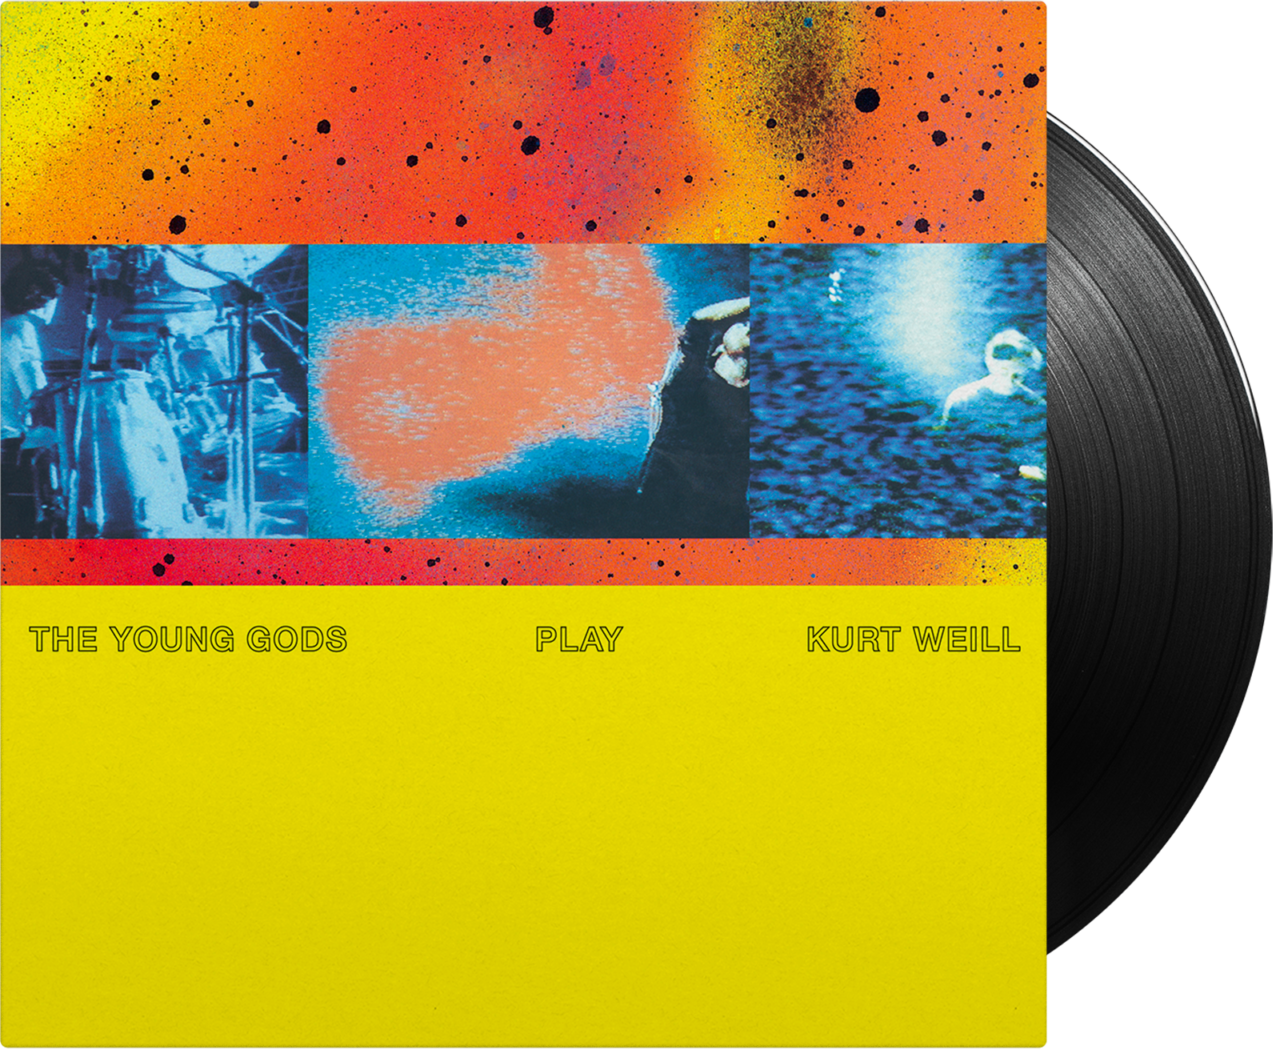 THE YOUNG GODS - Play Kurt Weill (30 Years Anniversary Vinyl Reissue) - Vinyl